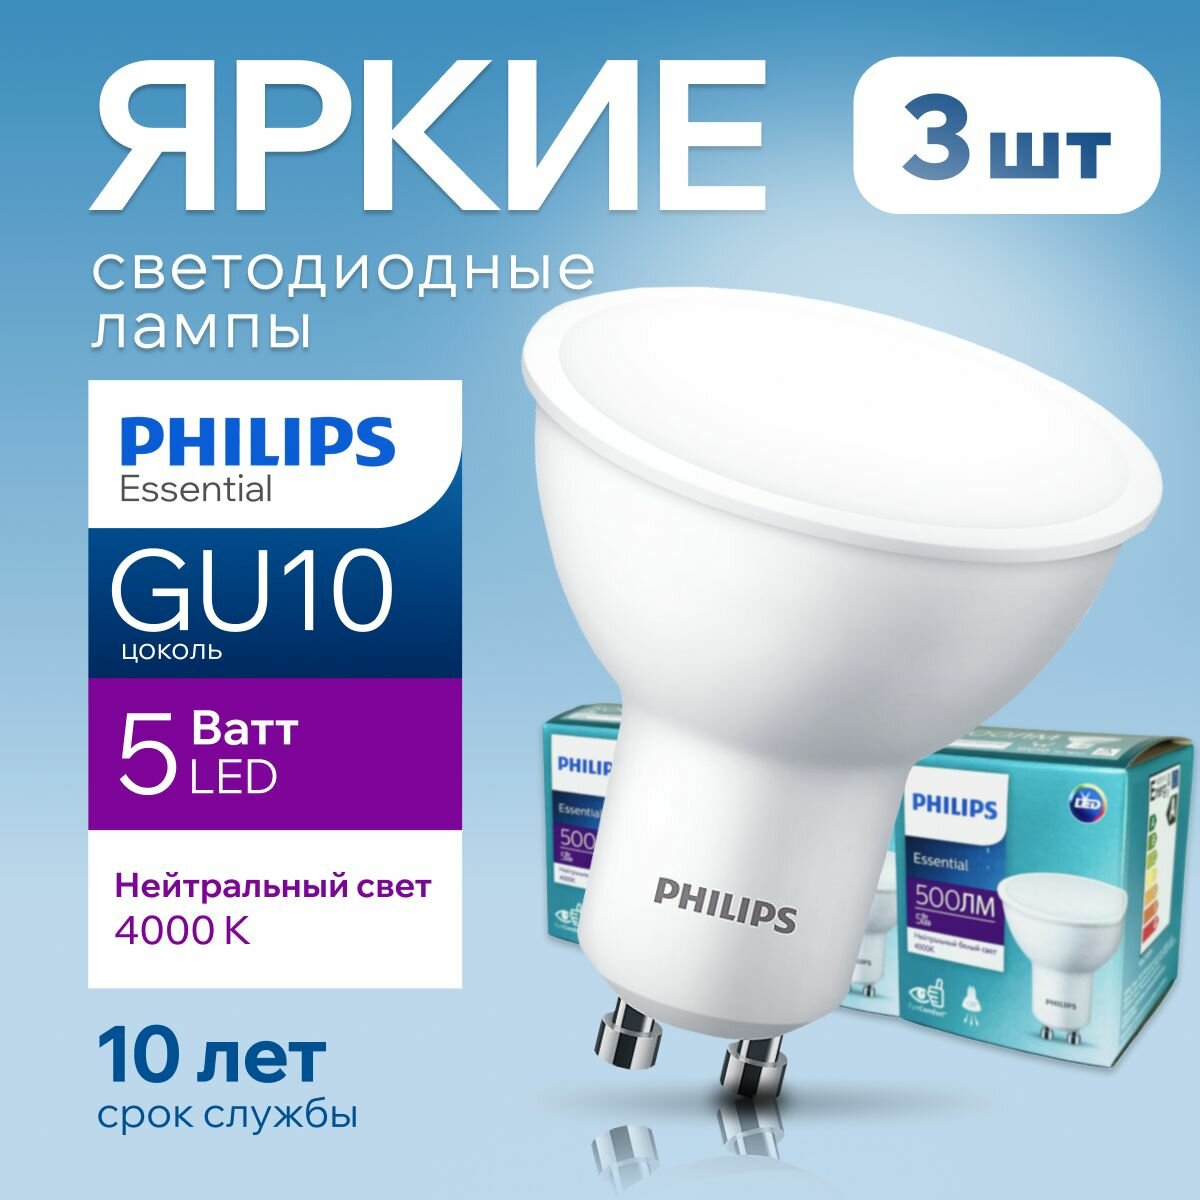 Лампочка светодиодная GU10 Philips 5Вт белый свет, PAR16 спот 4000К Essential LED 840, 5W, 500лм, набор 3шт